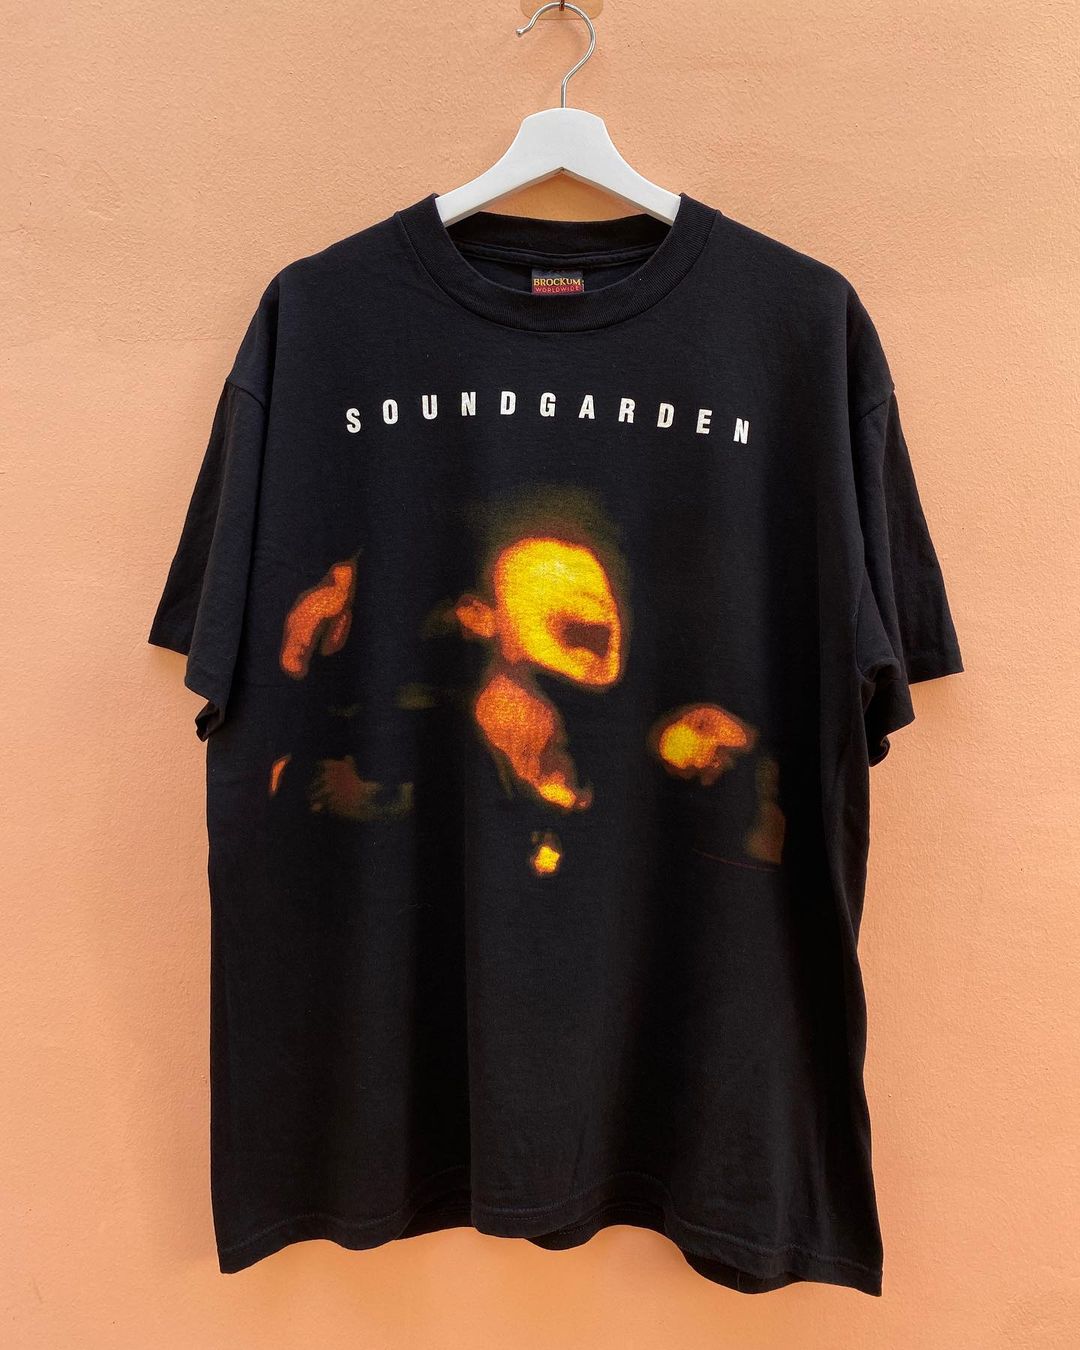 声音花园Soundgarden摇滚乐队1994专辑Superunknow海报短袖T恤